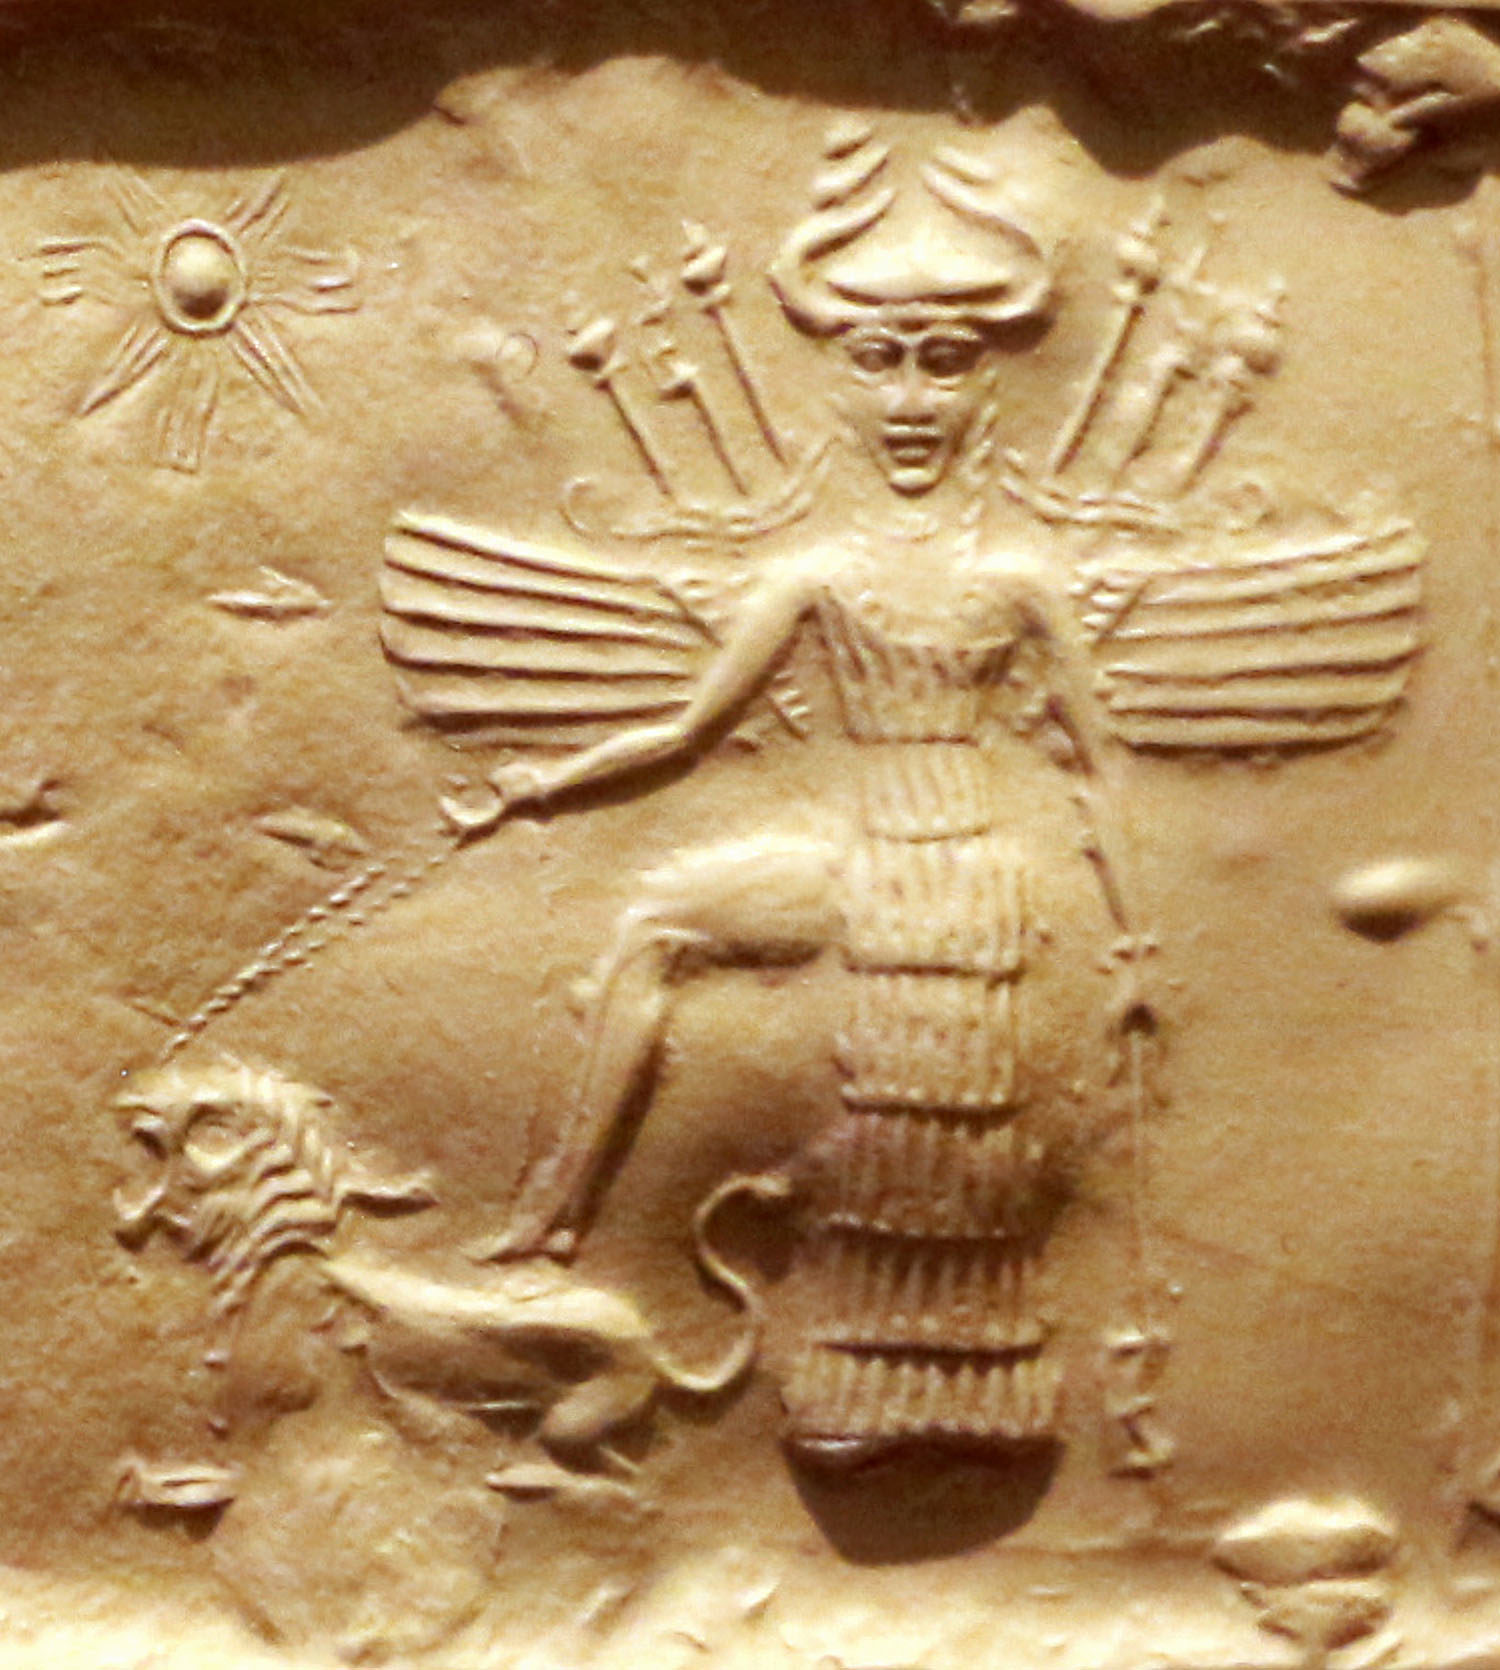 Innana sur un sceau akkadien. Elle est équipée de 7 lances, d'un casque à cornes et d'une robe constituée de 7 segments.